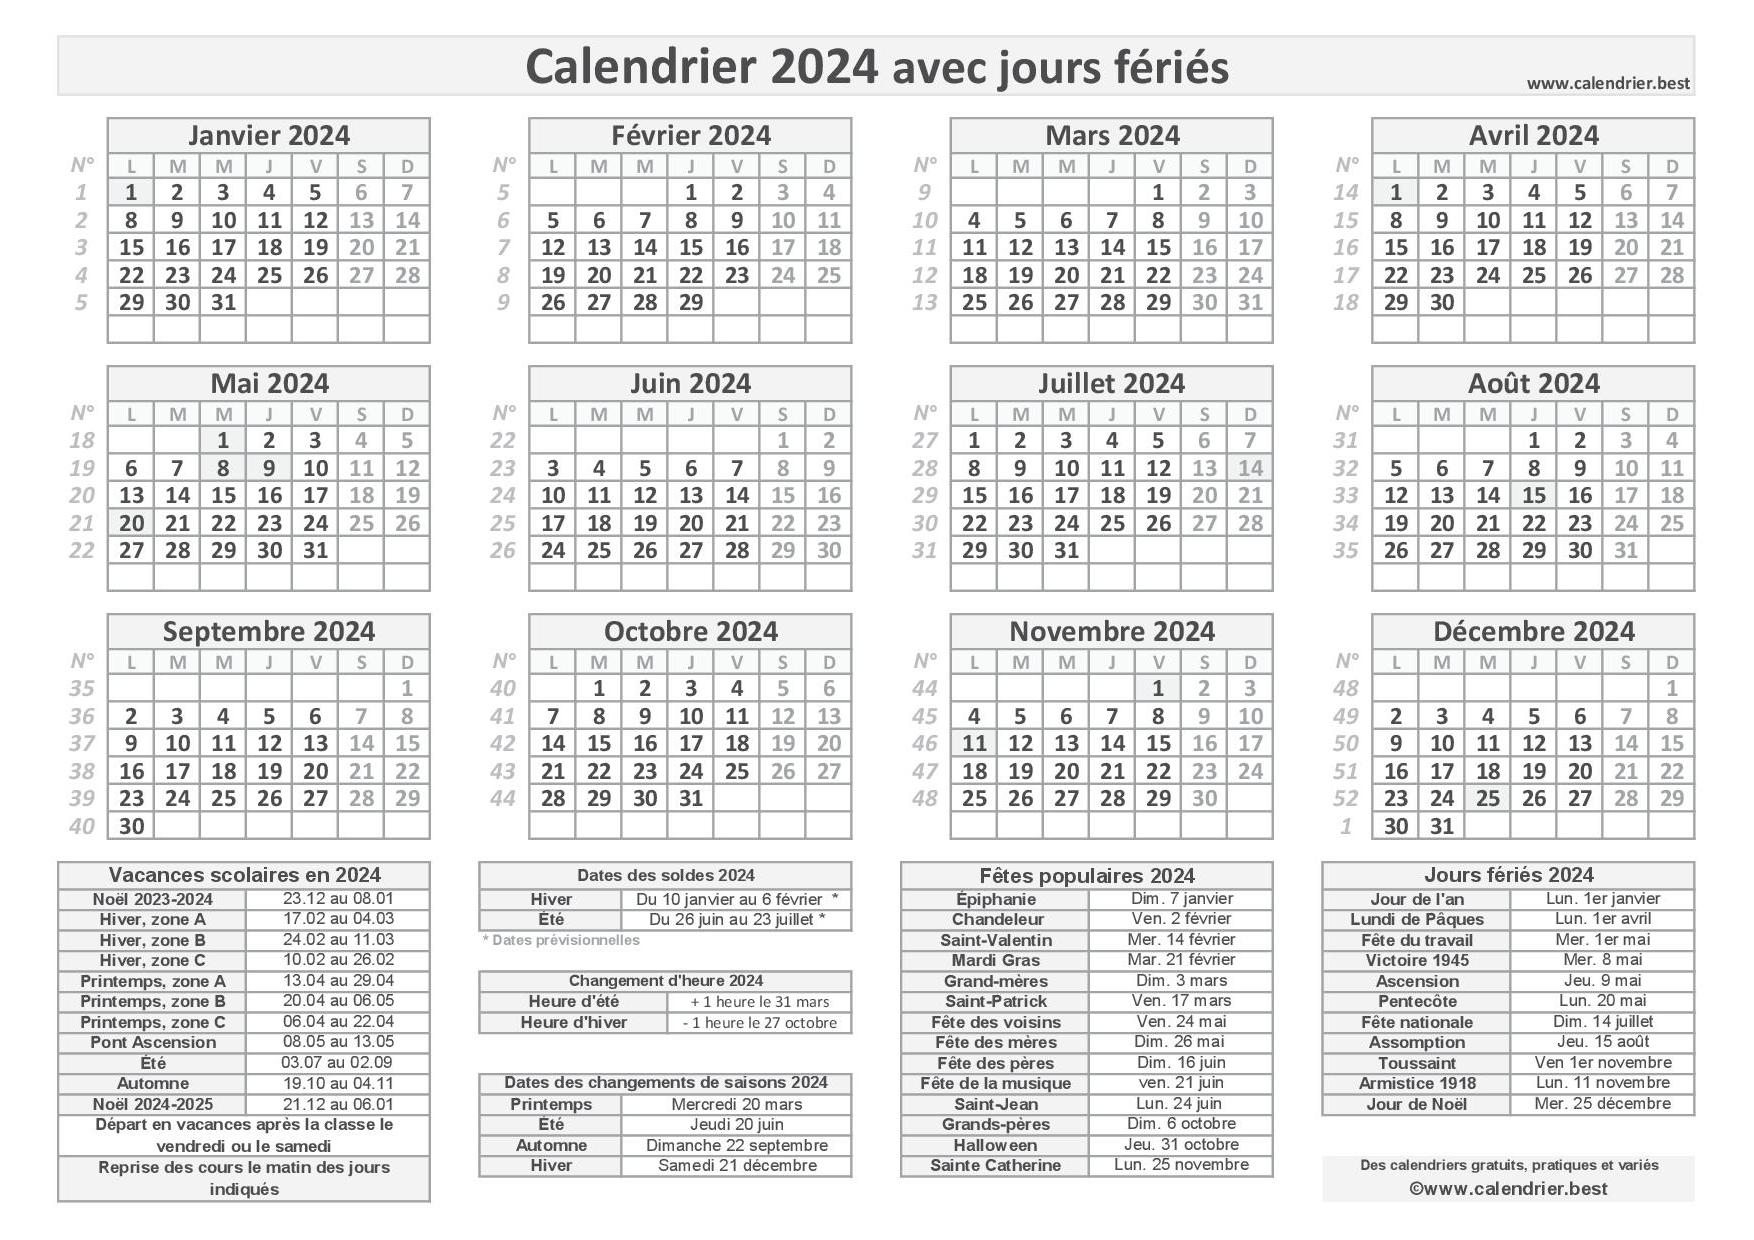 Calendrier 2024 : Vacances, Jours fériés, N° de semaine 